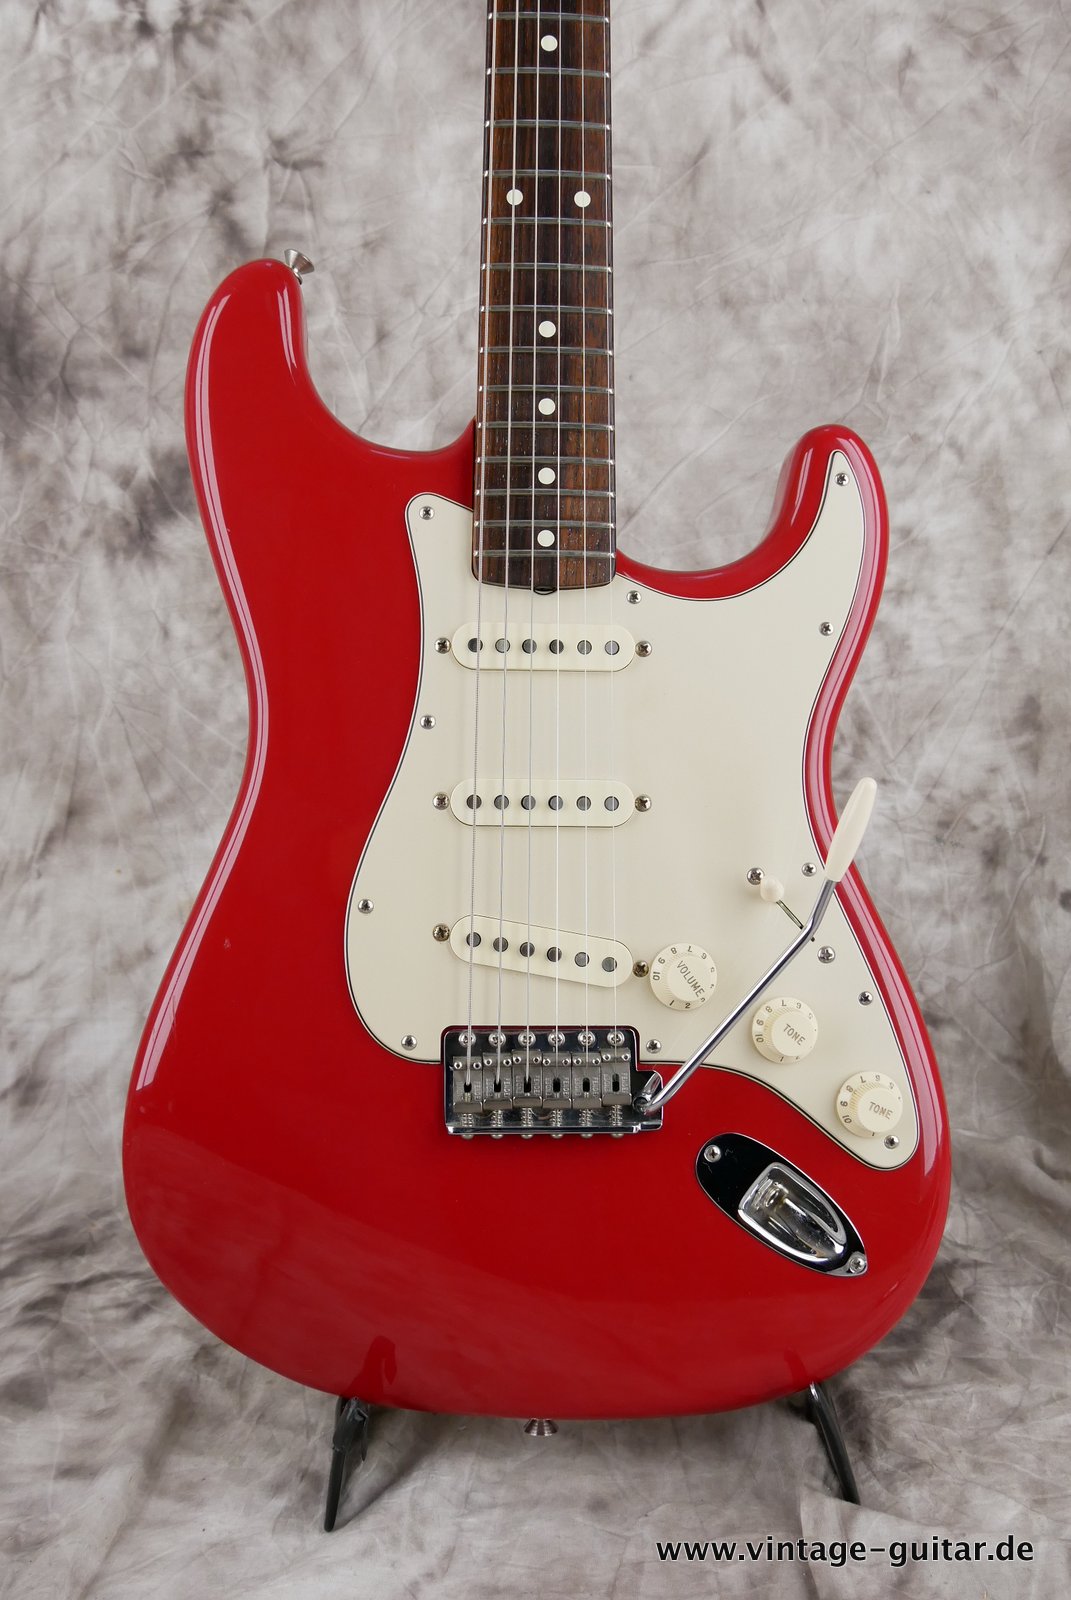 Fender-Stratocaster-Mark-Knopfler-Signature-002.JPG